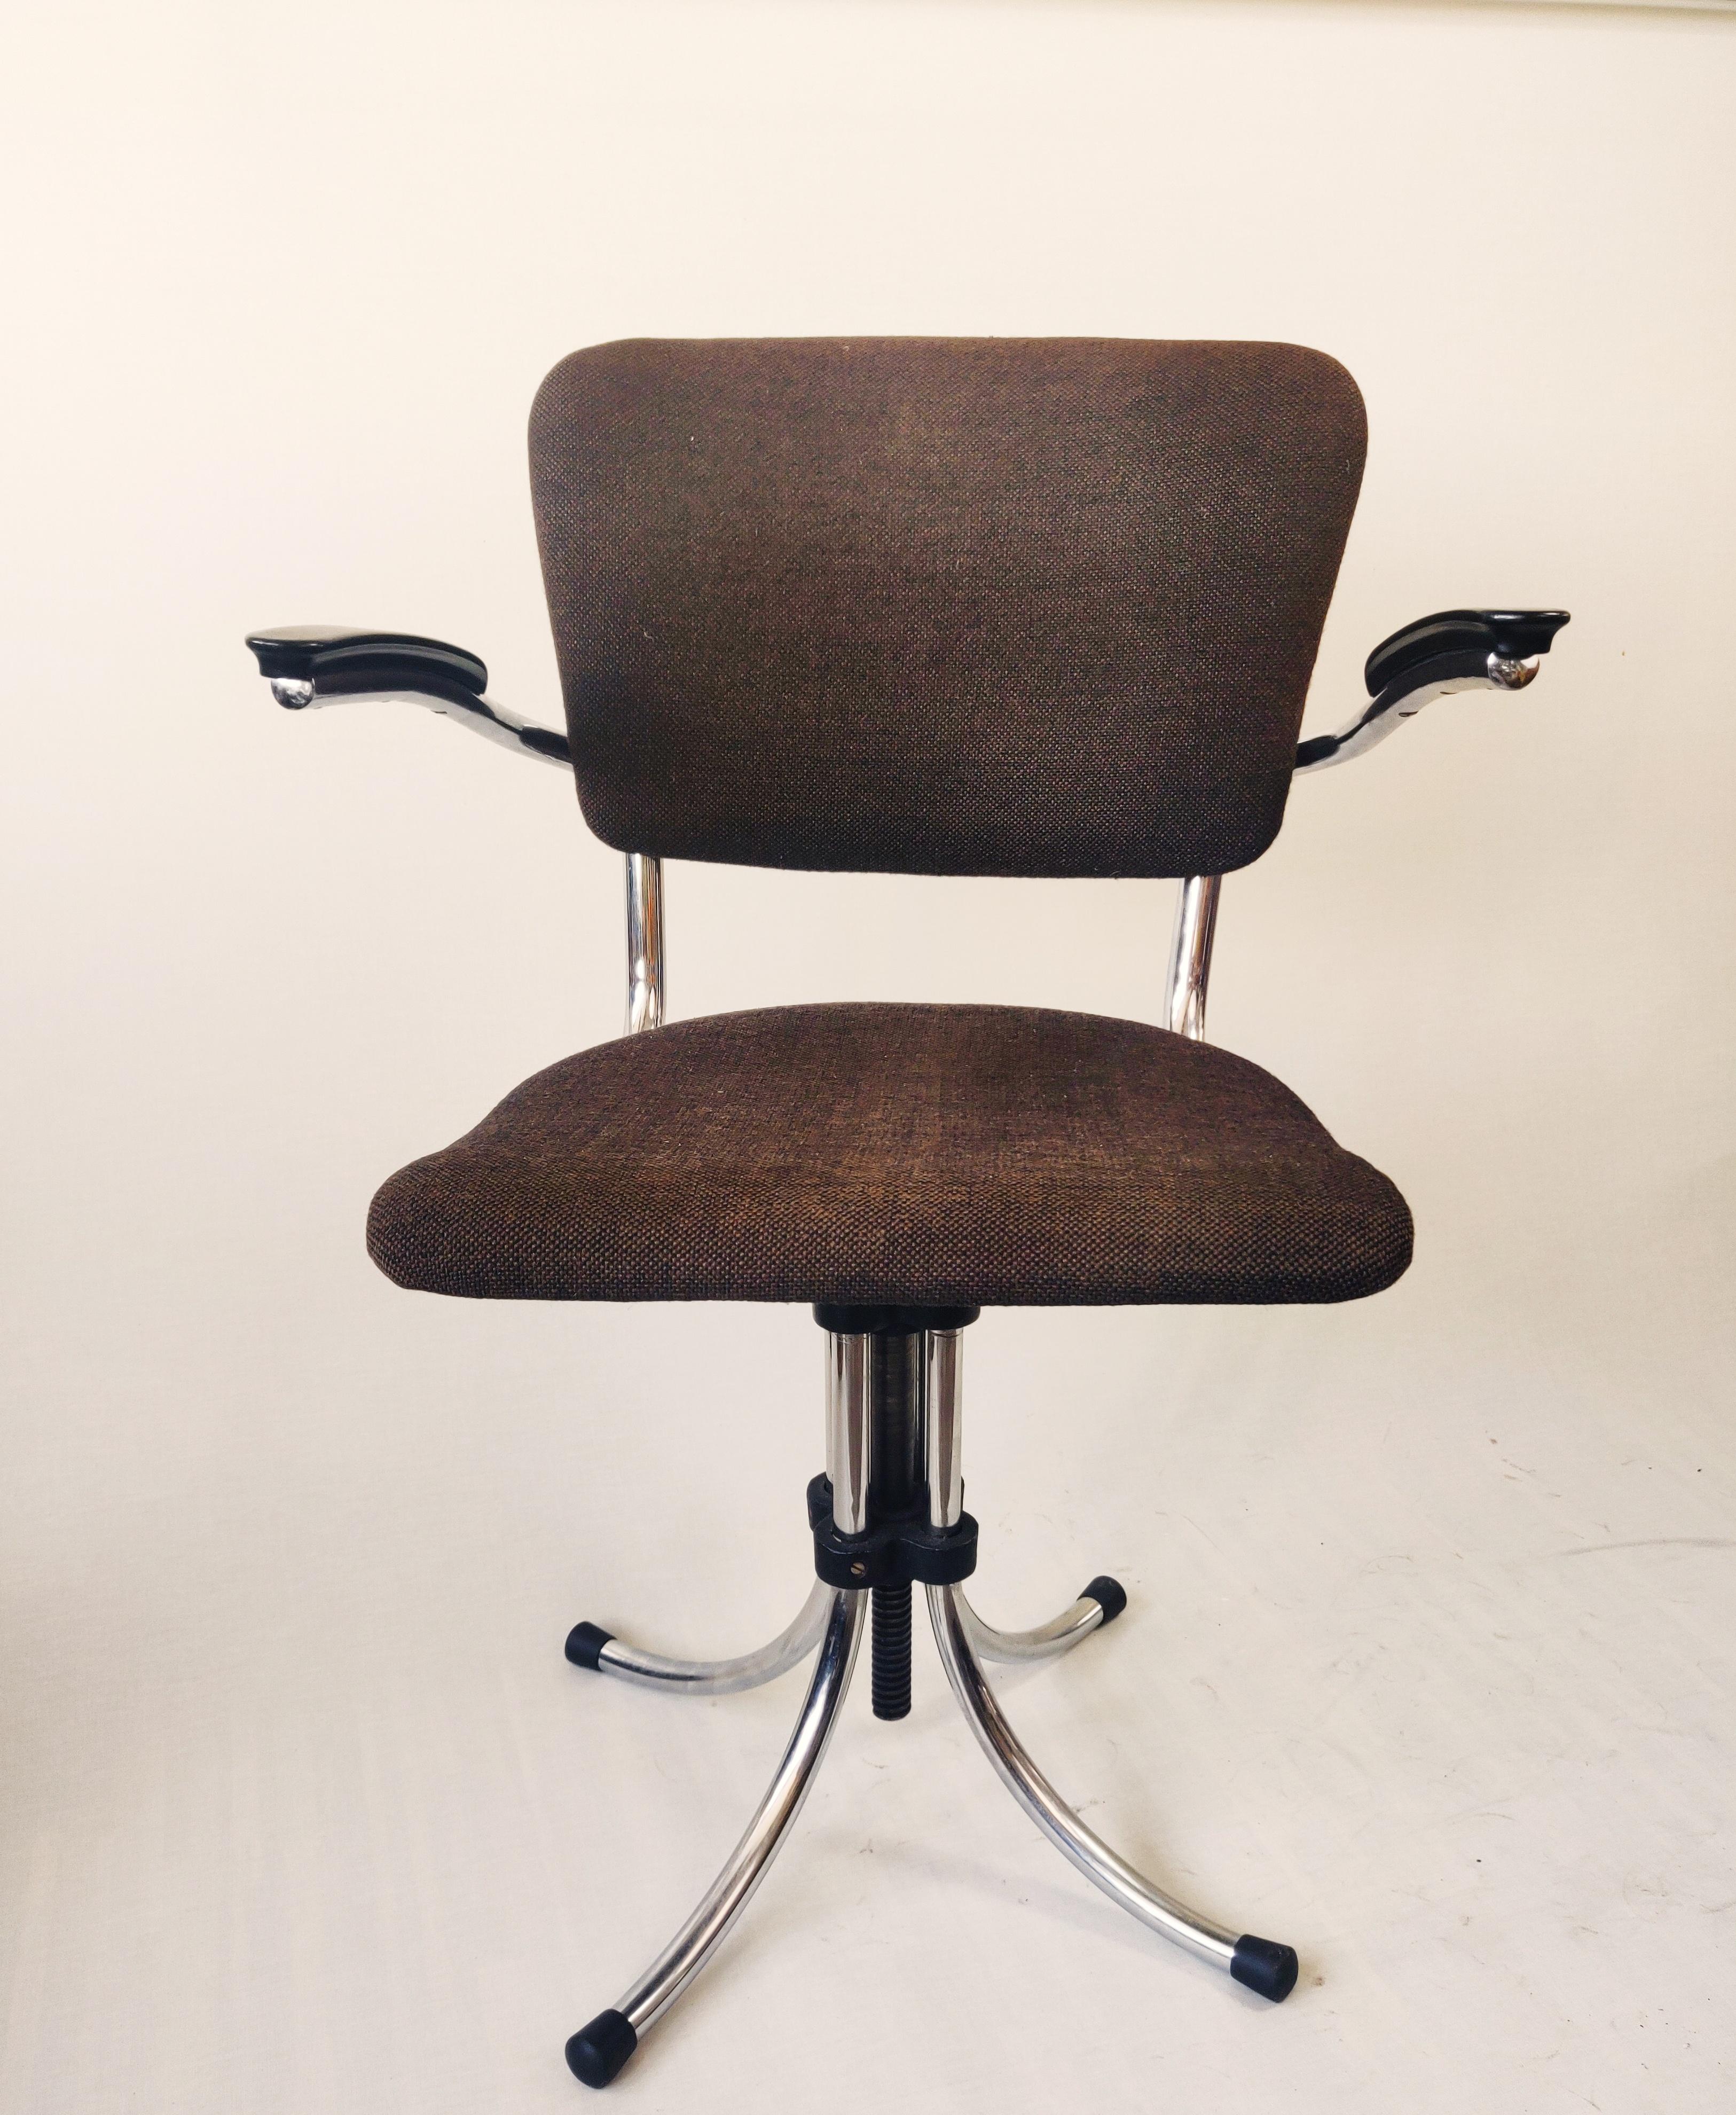 Seltener Bürostuhl von Fana Metaal Rotterdam, entworfen von Paul Schuitema in den 1960er Jahren. Der Stuhl hat ein Rohrgestell, Armlehnen aus Bakelit und Rückenlehne und Sitz aus braunem Stoff. . Patina auf dem Rohrrahmen. Der Stuhl ist